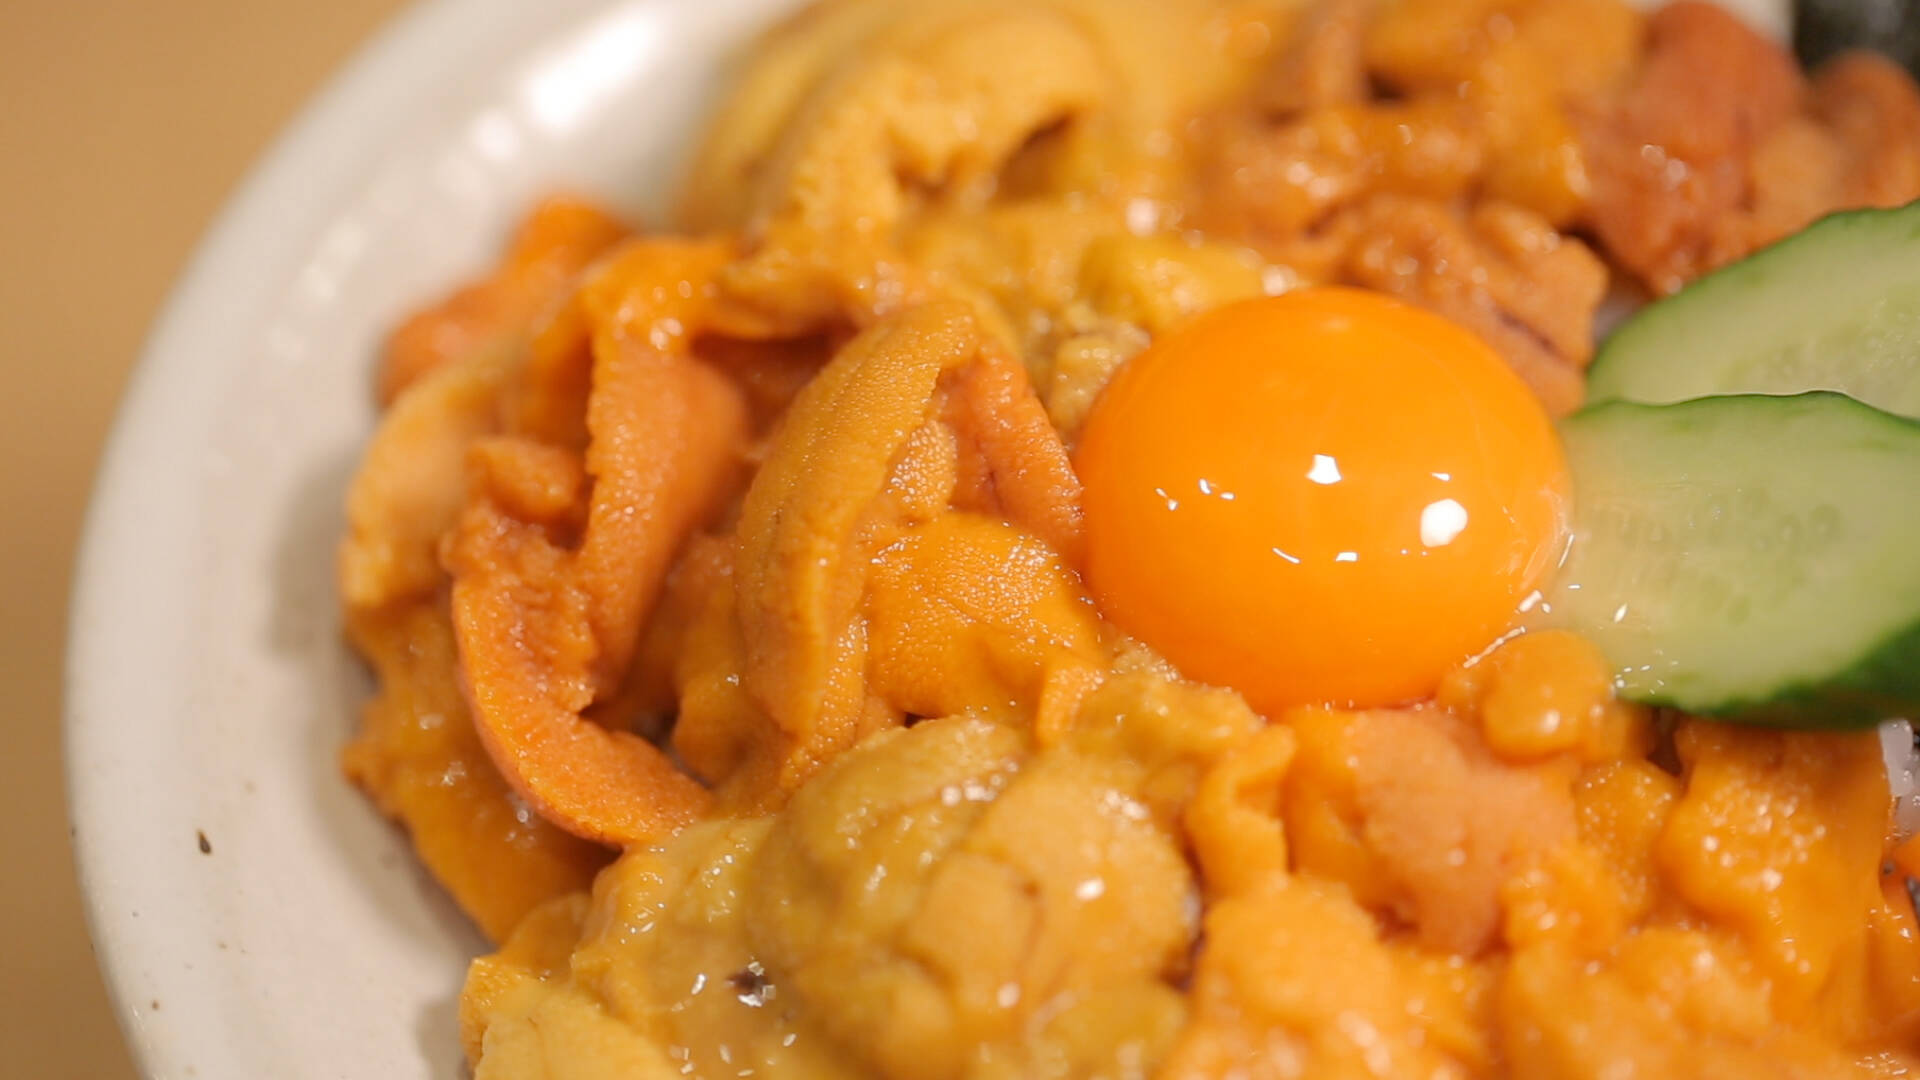 ウニ好きにはたまらない 東京で絶品ウニ料理が味わえるお店4選 18年8月4日 エキサイトニュース